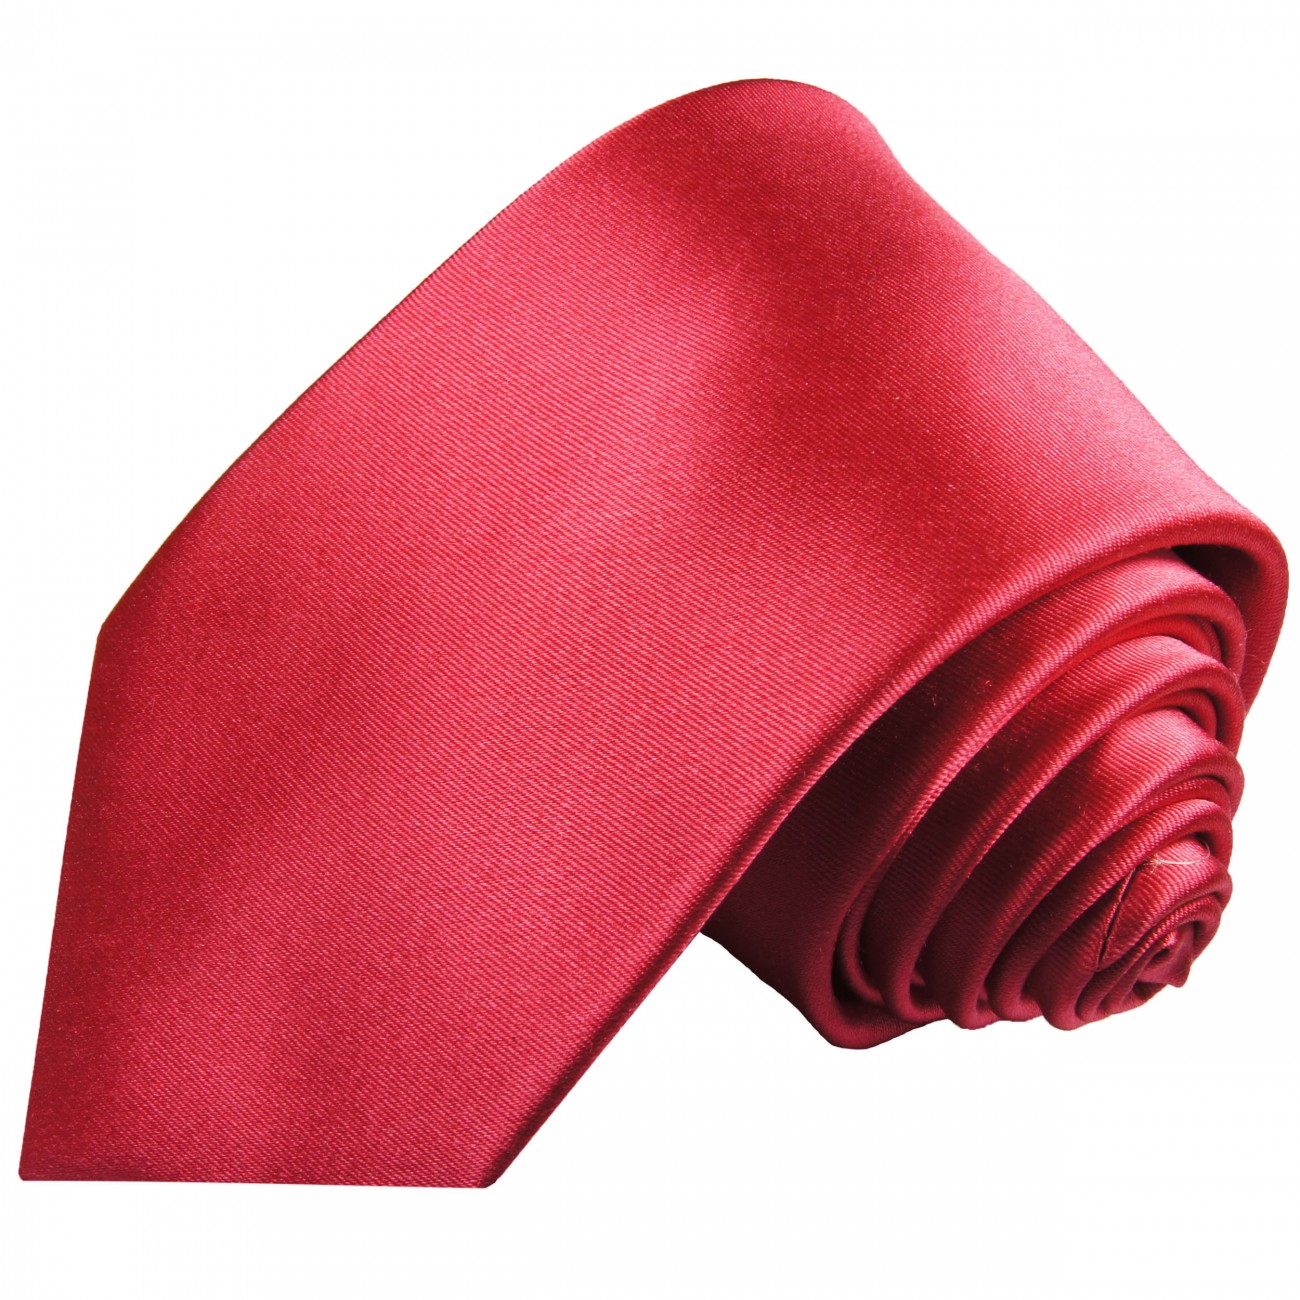 Krawatte pink uni Seide